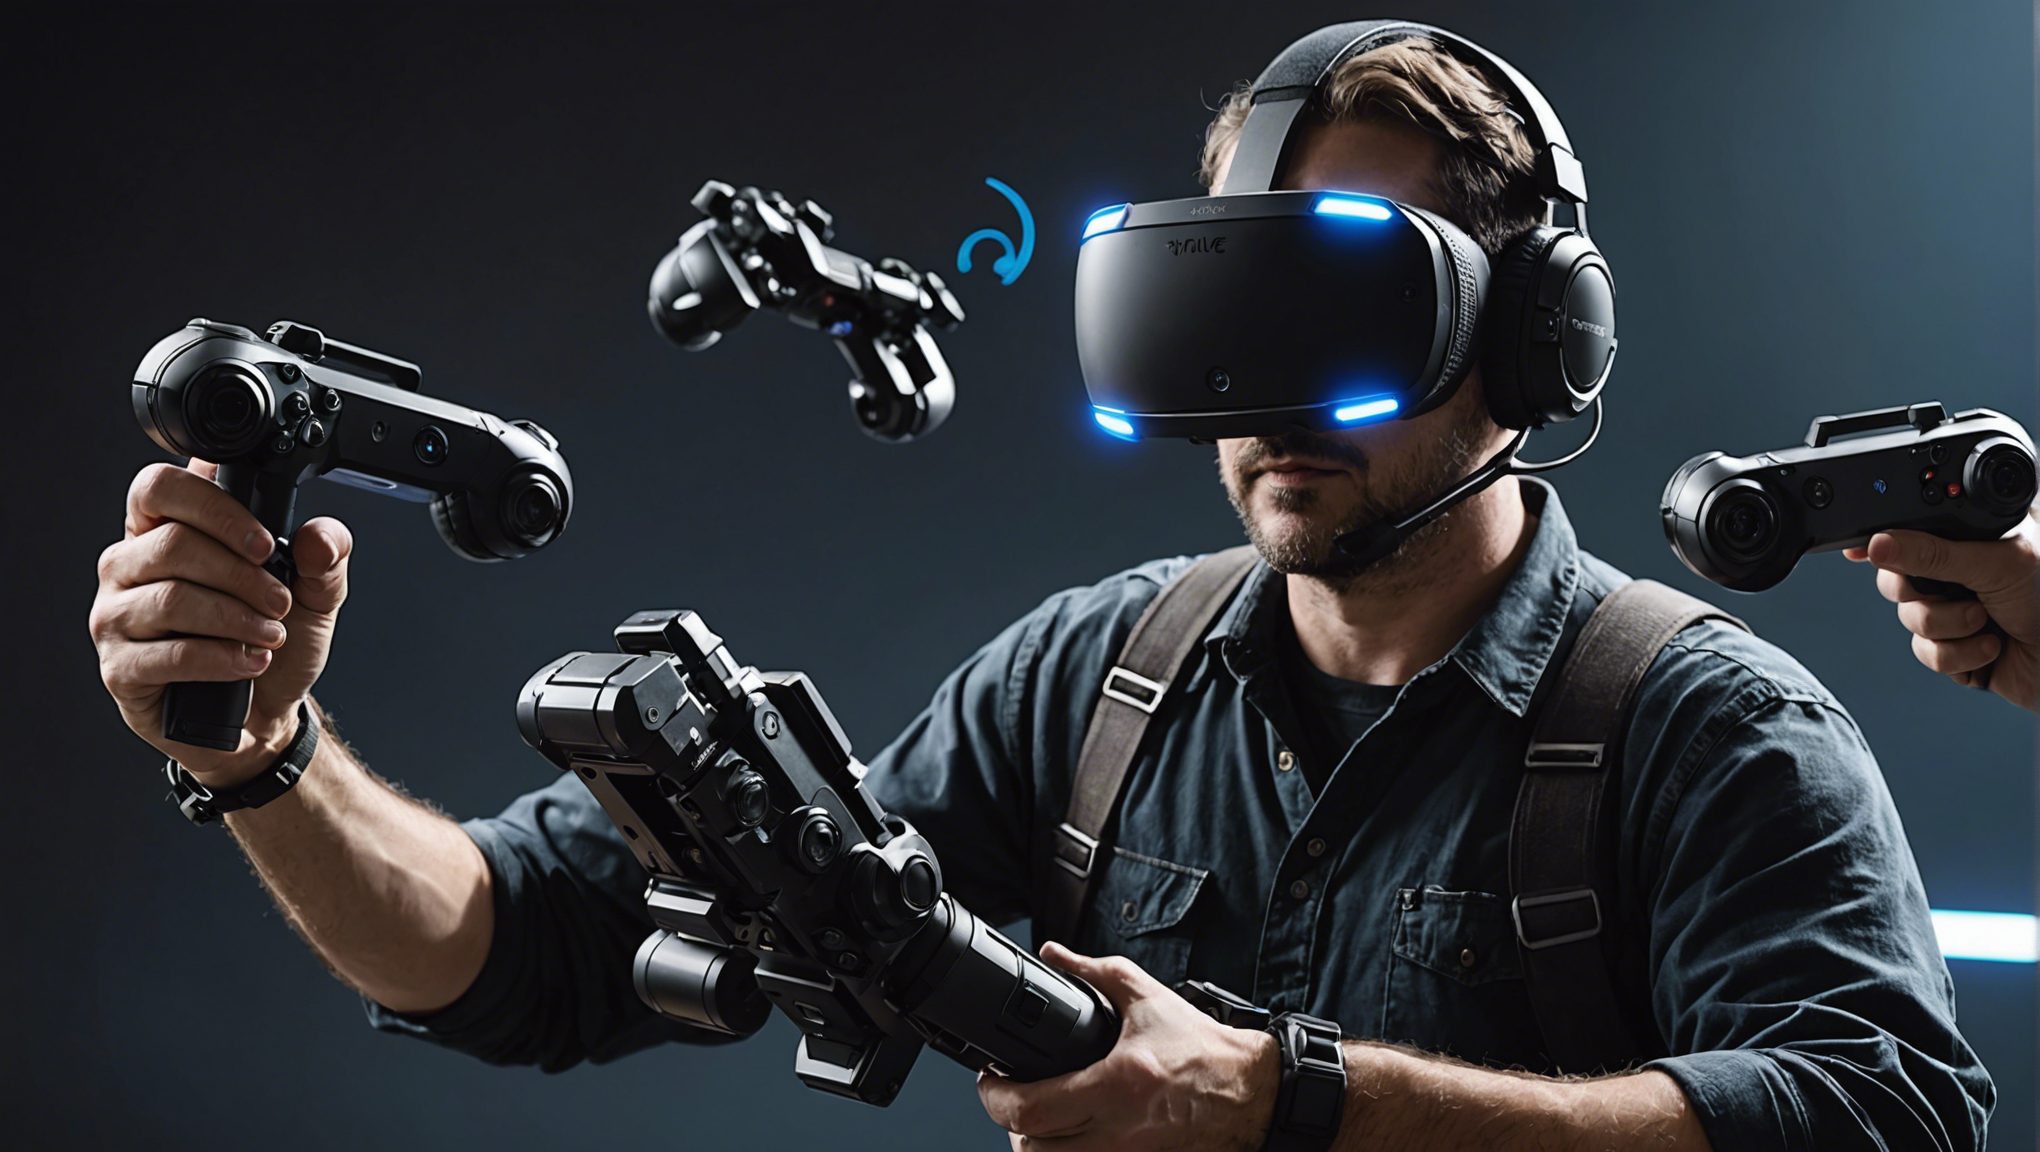 découvrez la révolution du gaming avec le valve index : casque de réalité virtuelle de pointe, manettes de précision et expérience immersive inégalée.